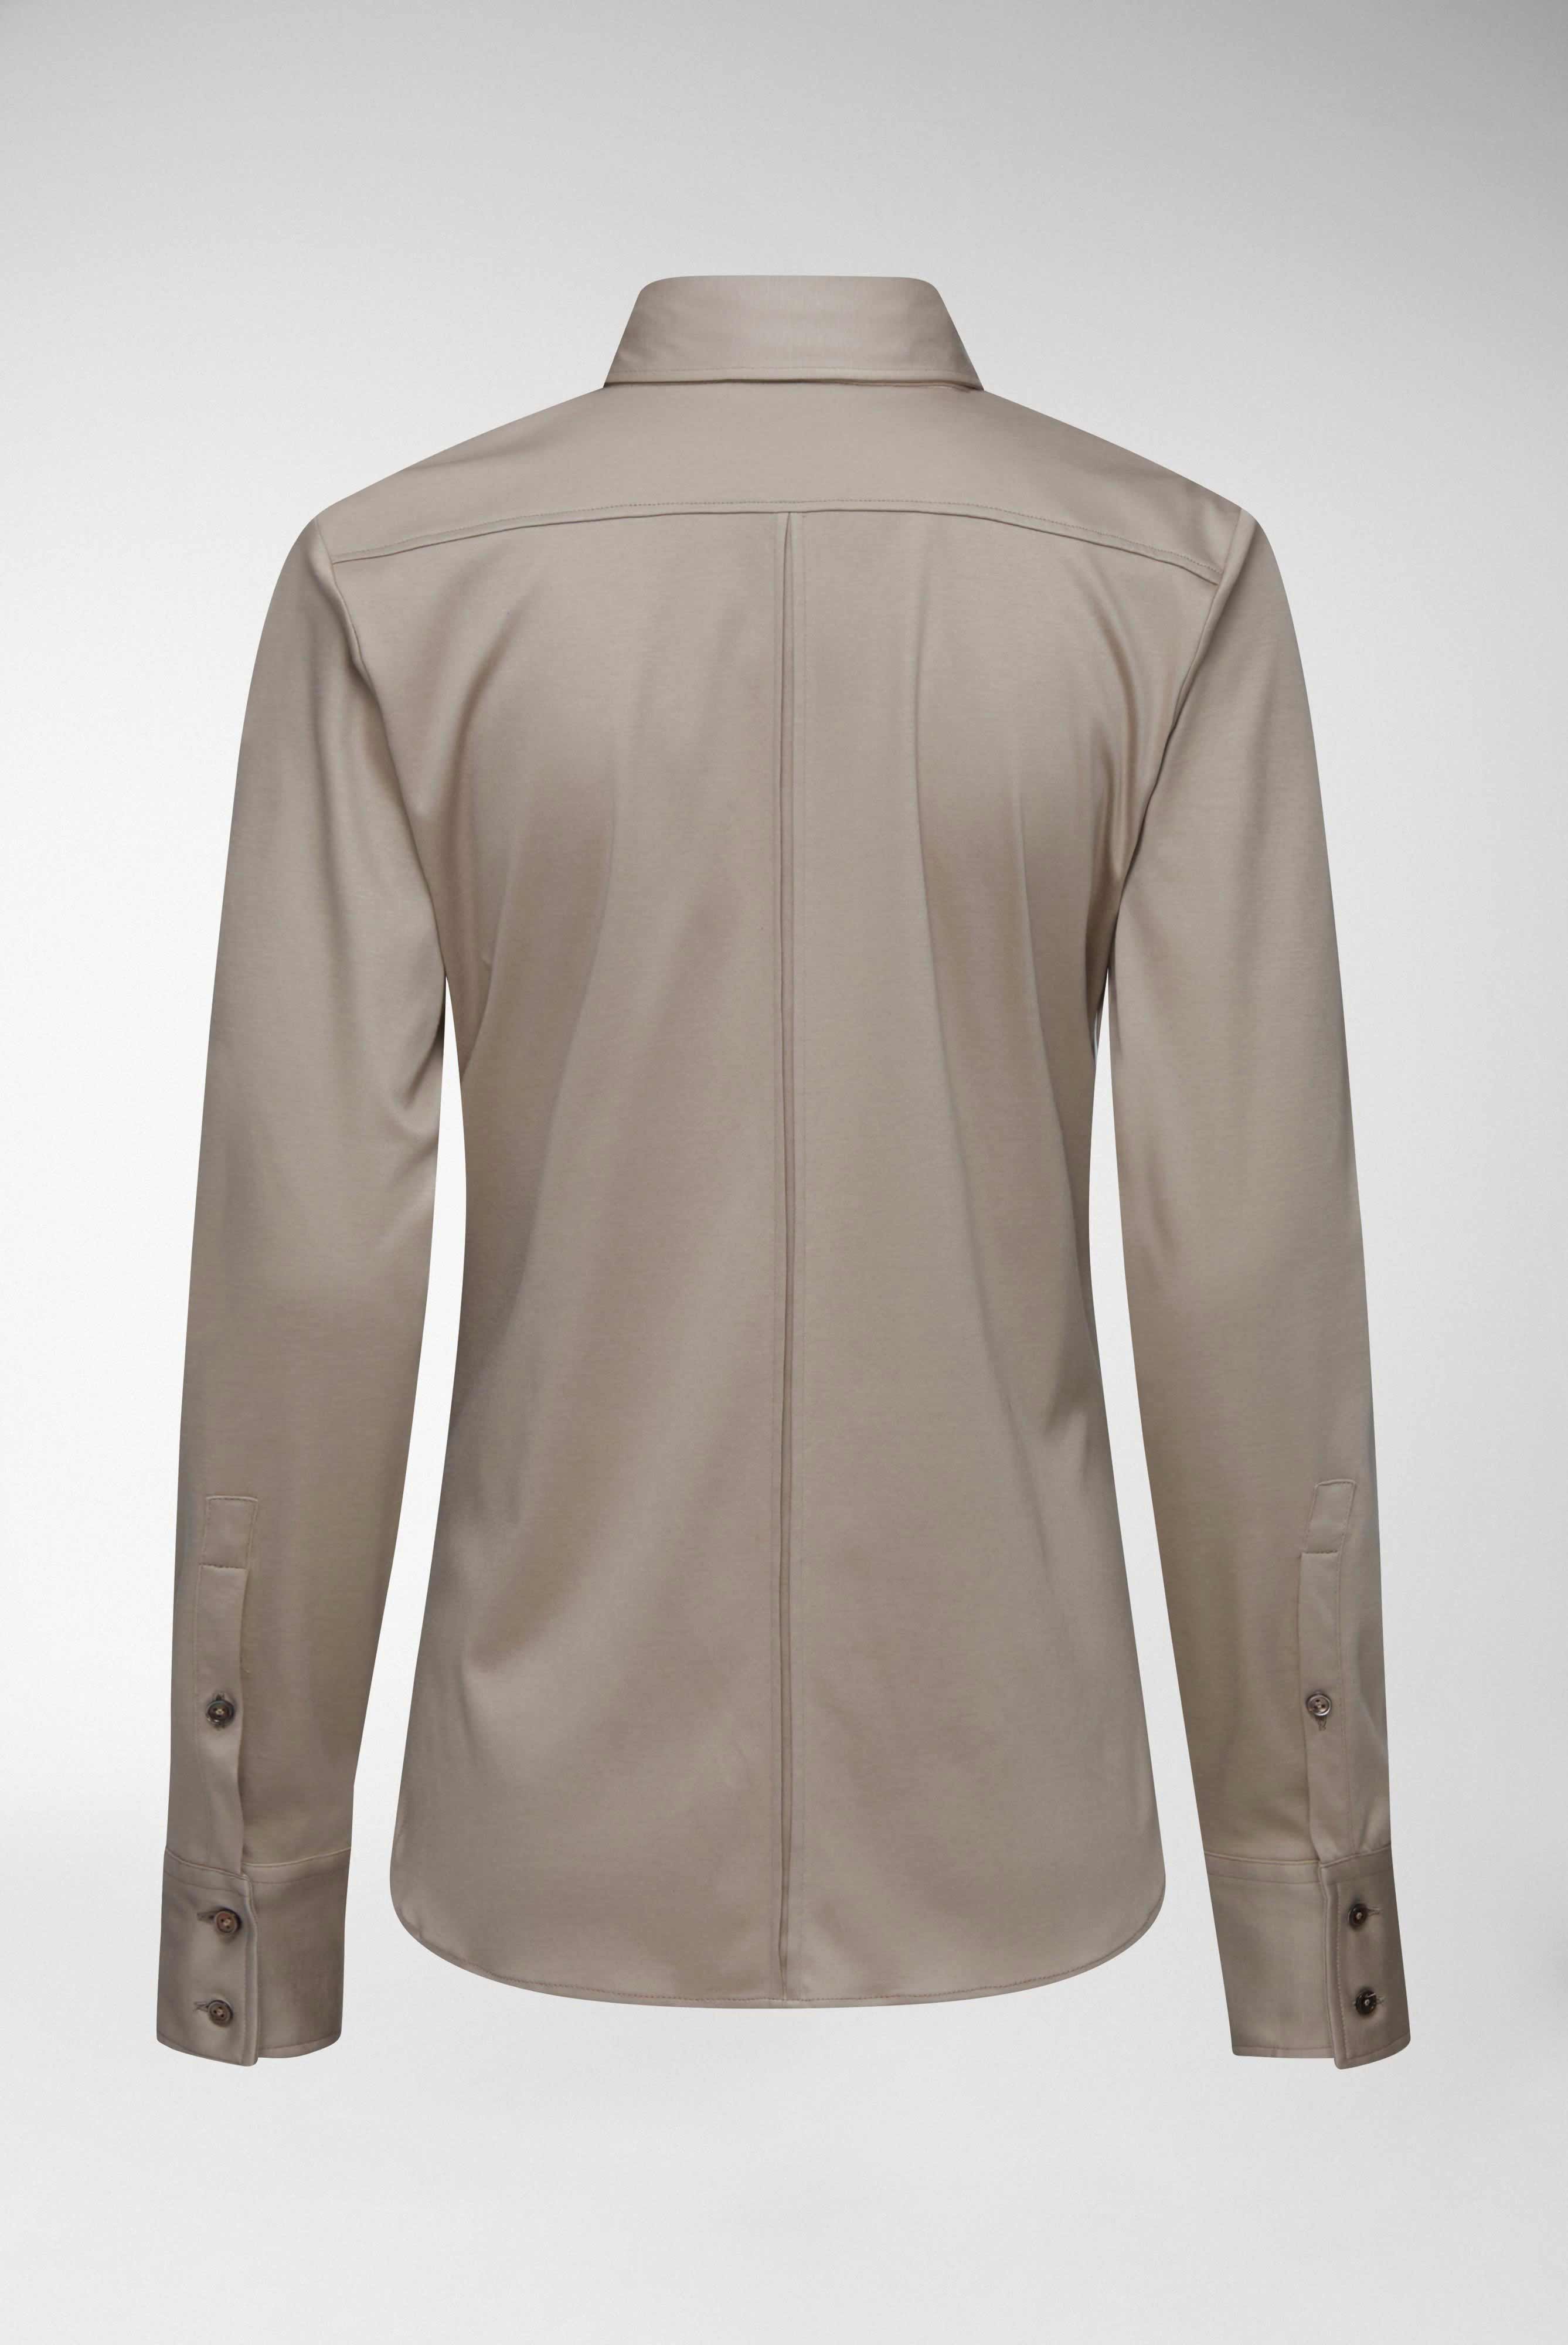 Casual Blusen+Taillierte Jersey Hemdbluse aus Schweizer Baumwolle+05.603Y..180031.140.36